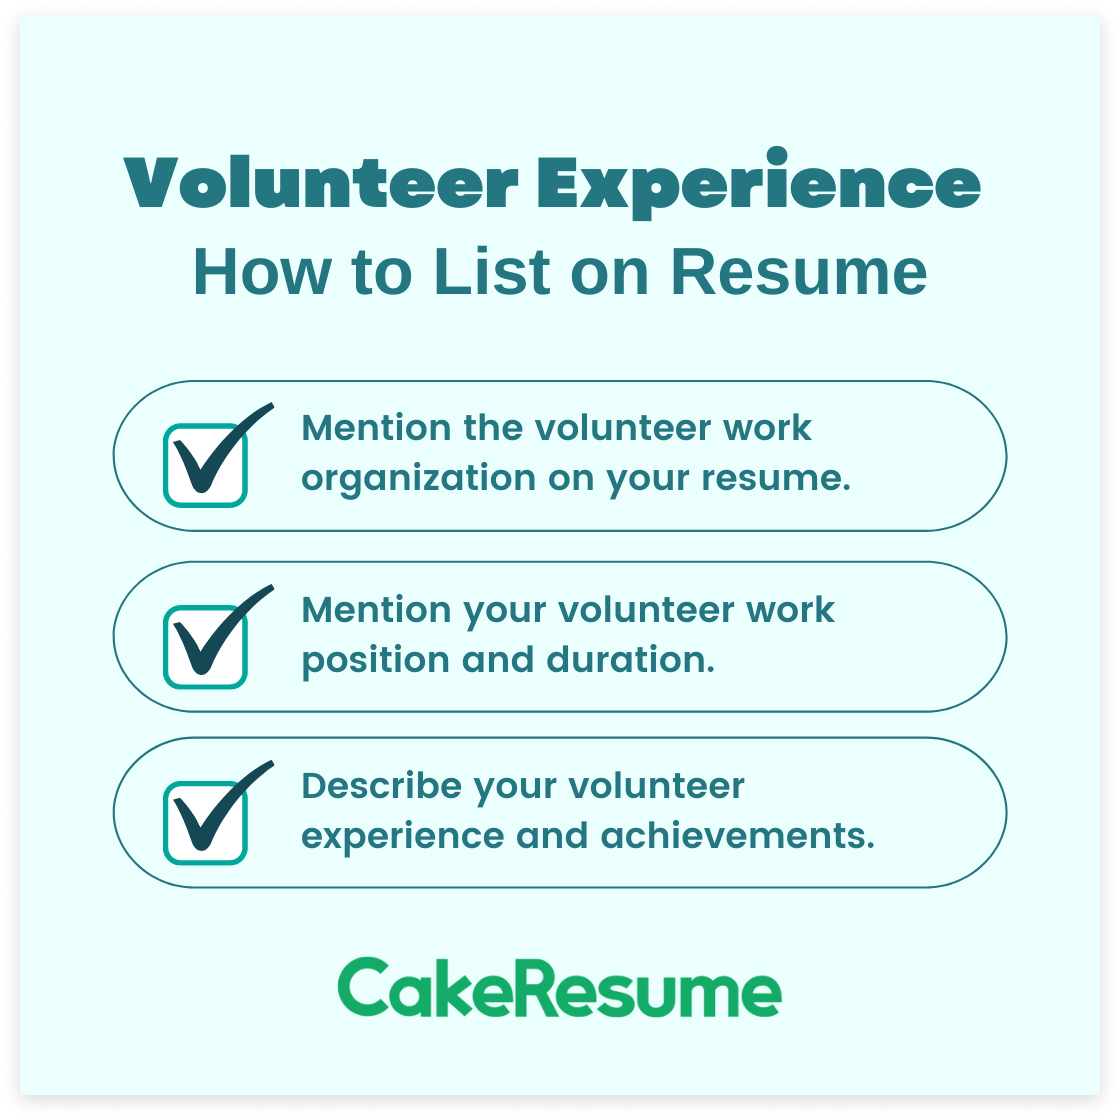 Volunteer Experience on Resume